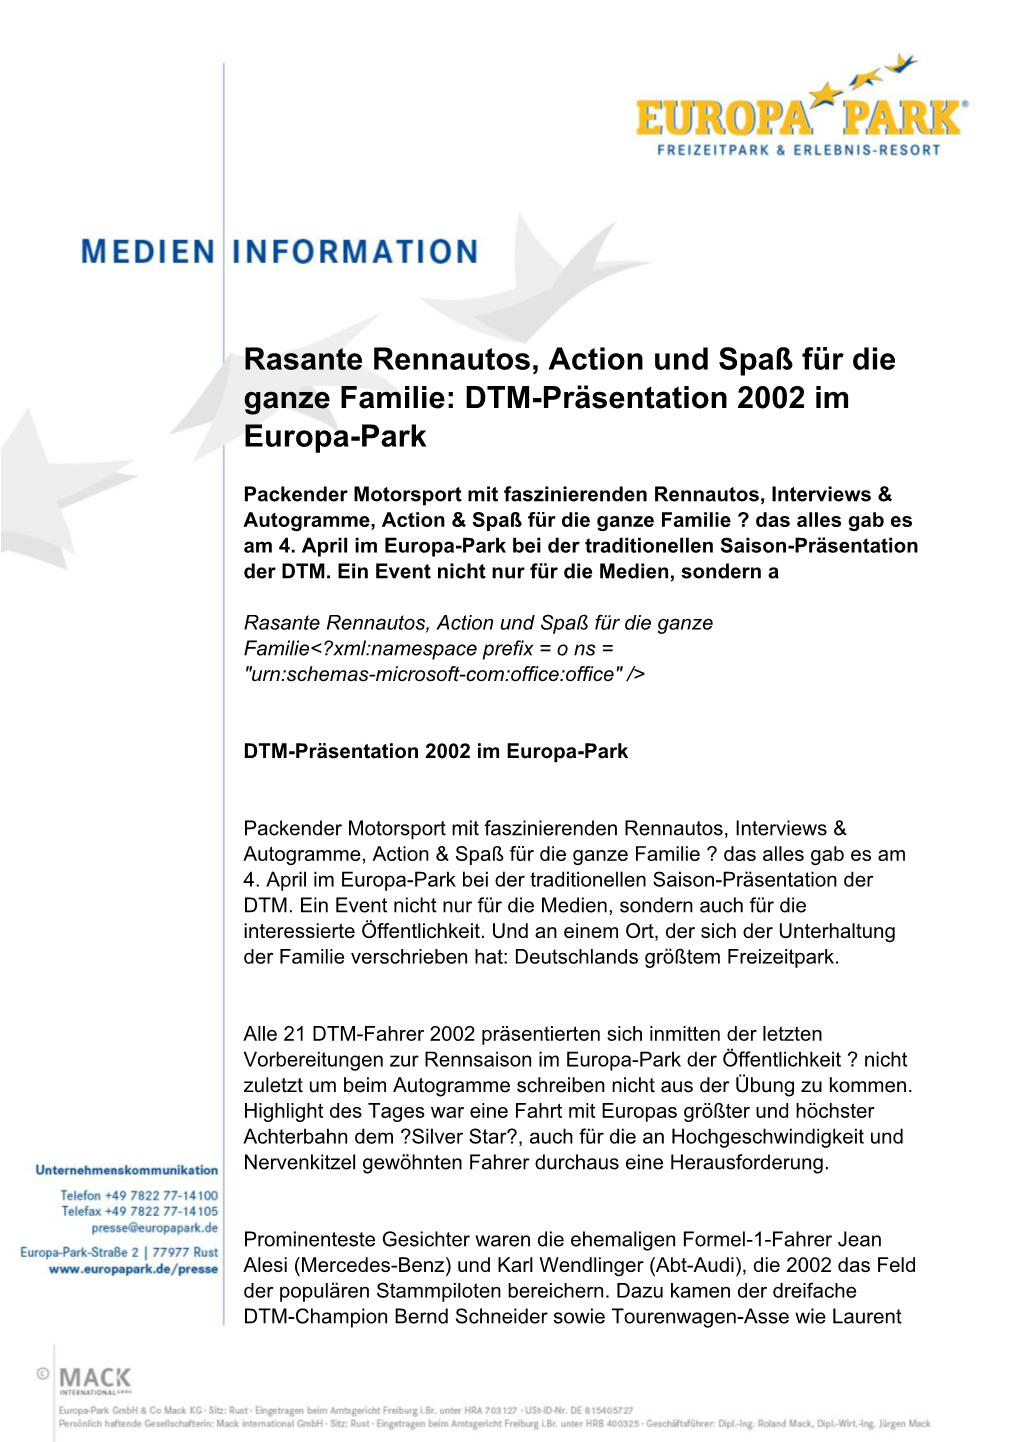 Rasante Rennautos, Action Und Spaß Für Die Ganze Familie: DTM-Präsentation 2002 Im Europa-Park